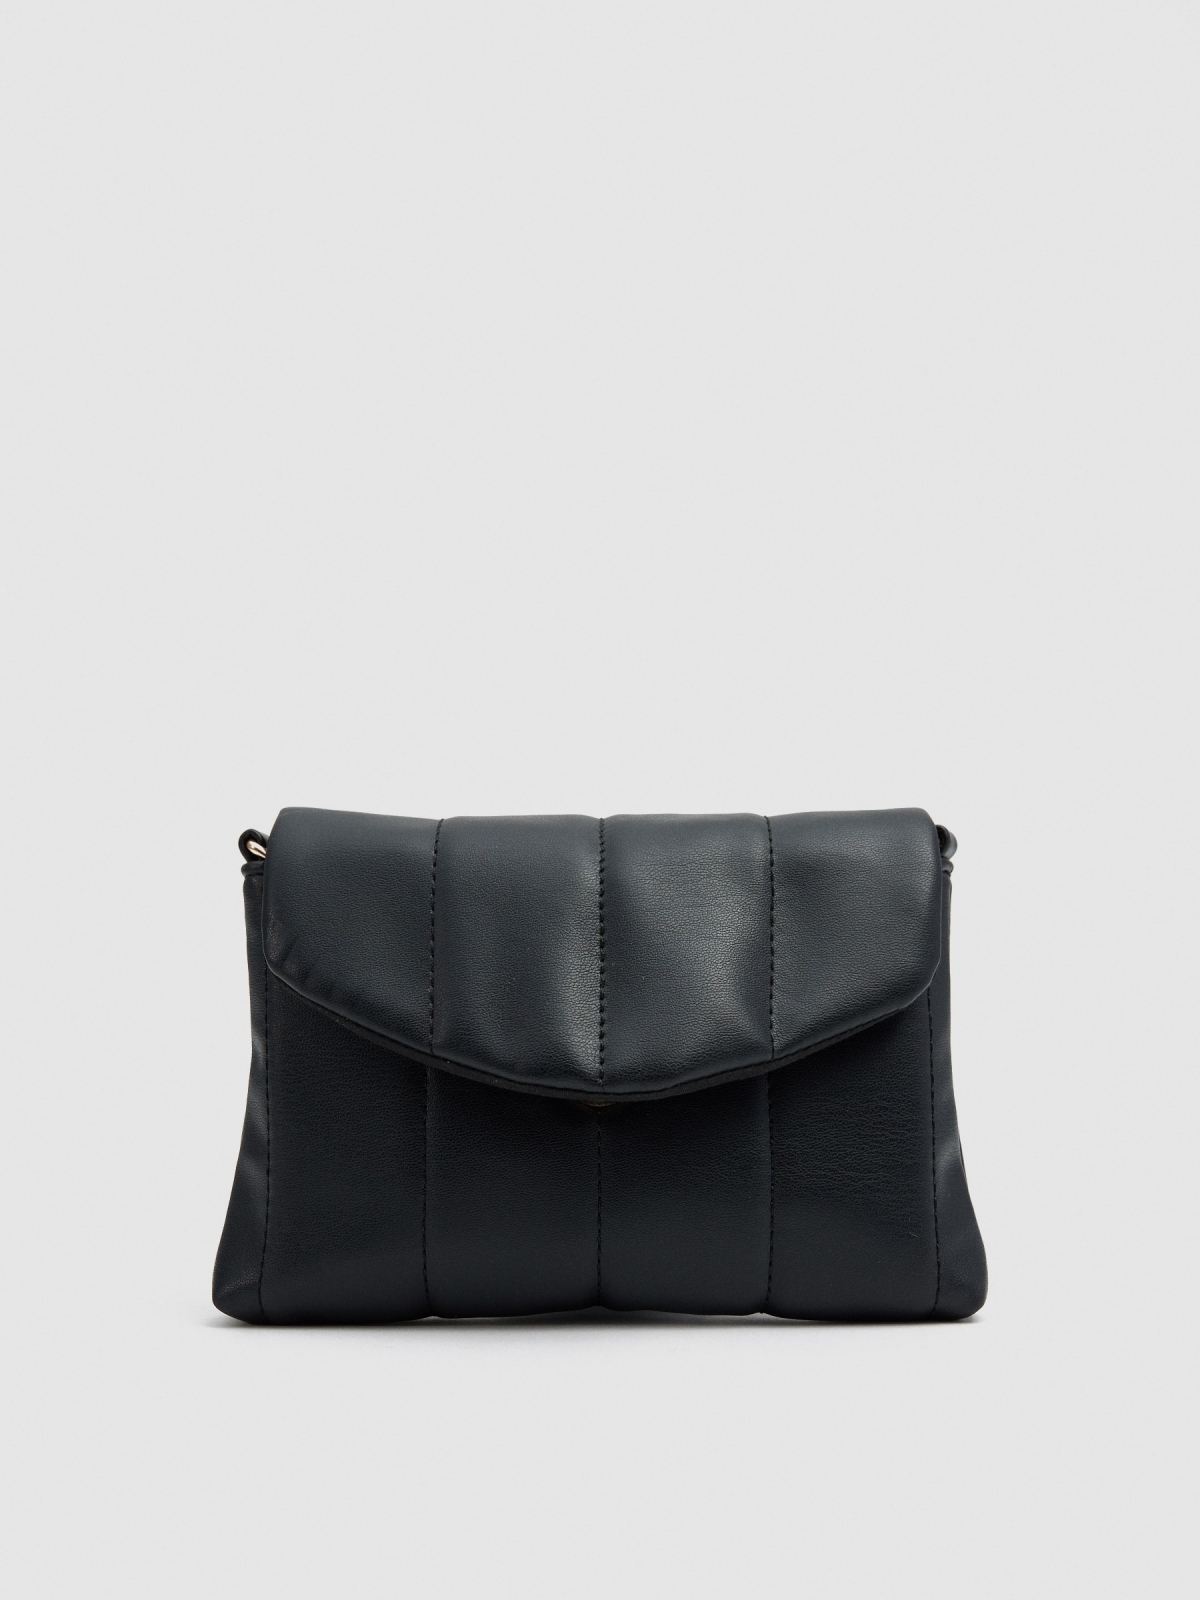 Padded shoulder bag black